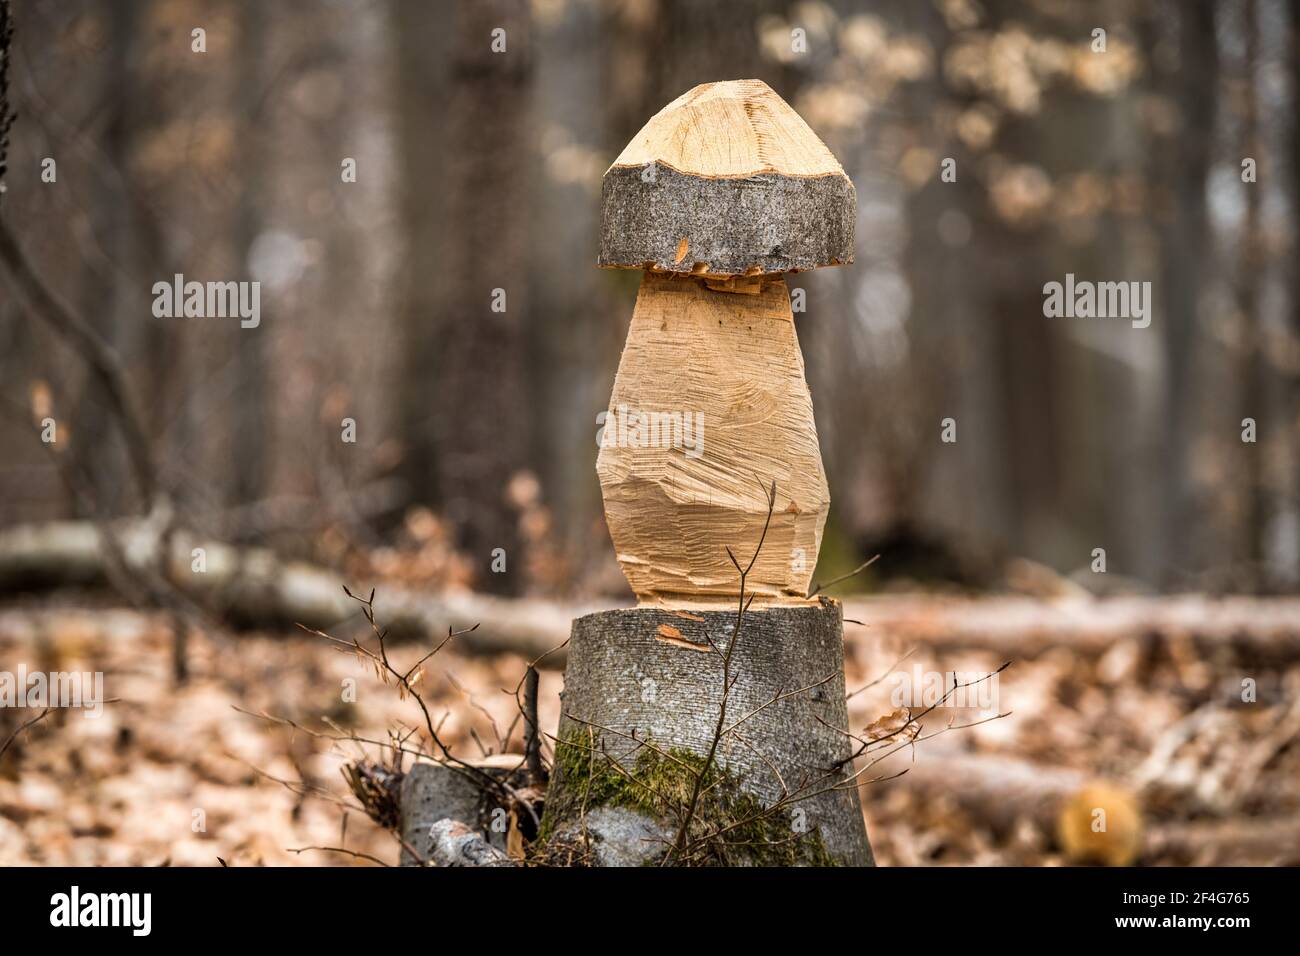 Sculpture de bois dans la forêt sous la forme d'un champignon Banque D'Images